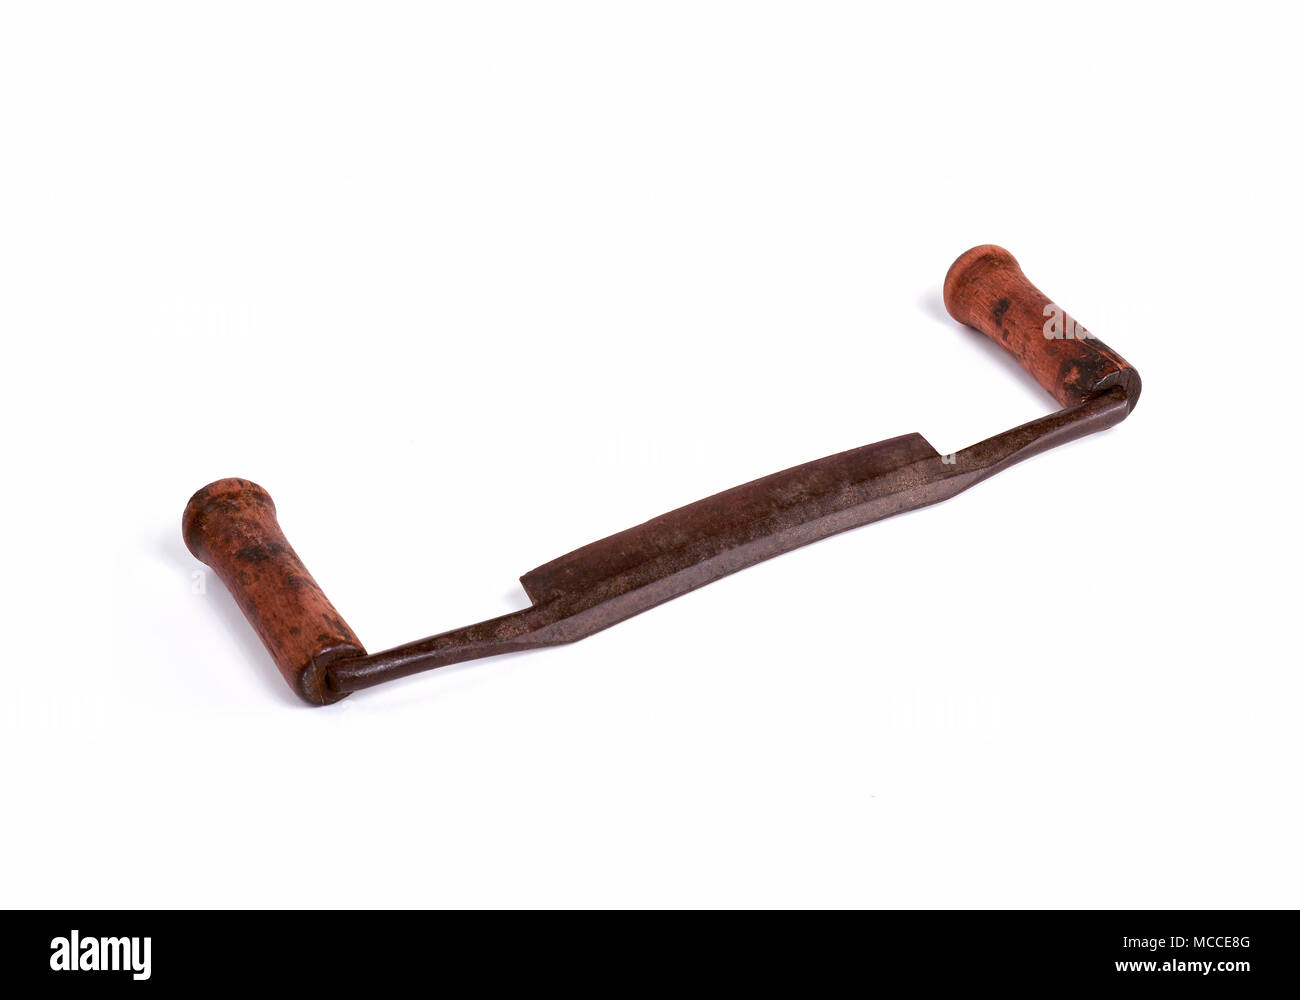 Tirage ancien couteau, outil de travail bois primitive avec lame en acier et de poignées en bois. Banque D'Images